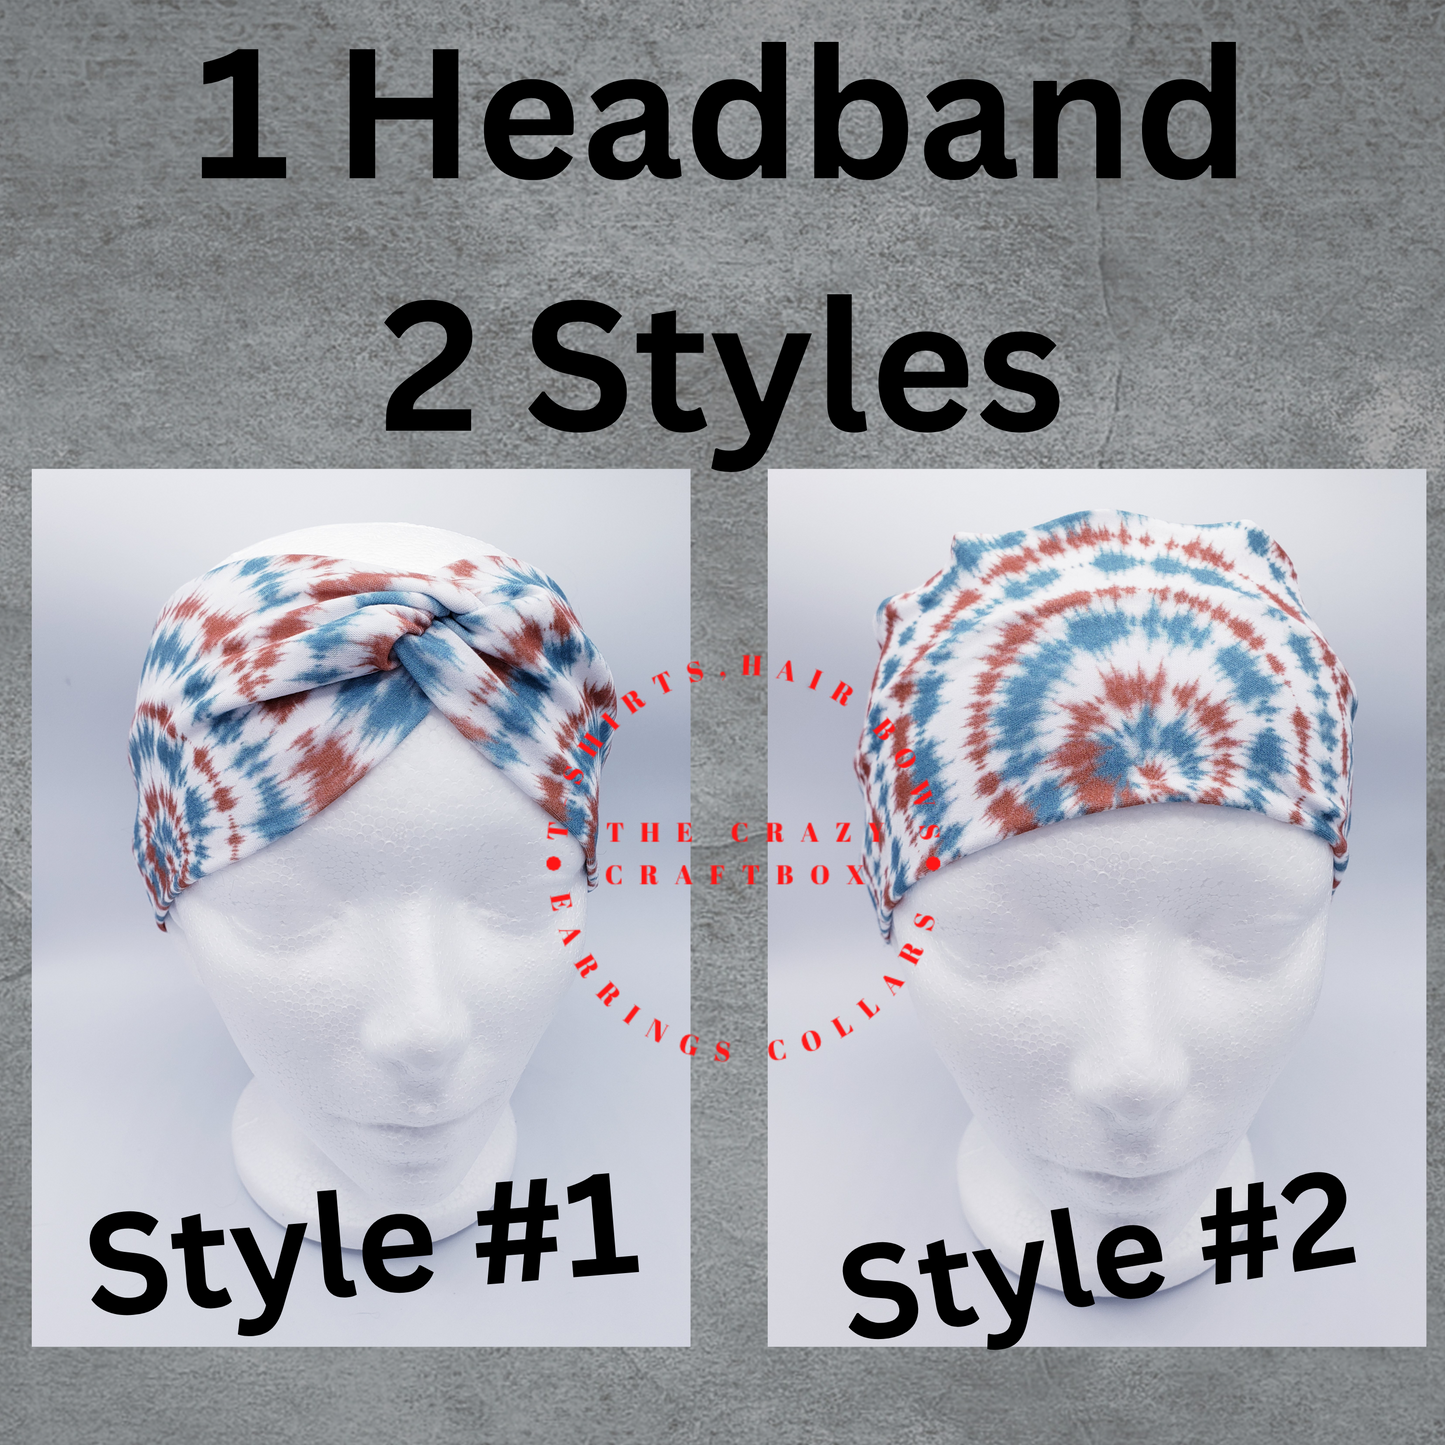 Red/Black/White Plaid Headband